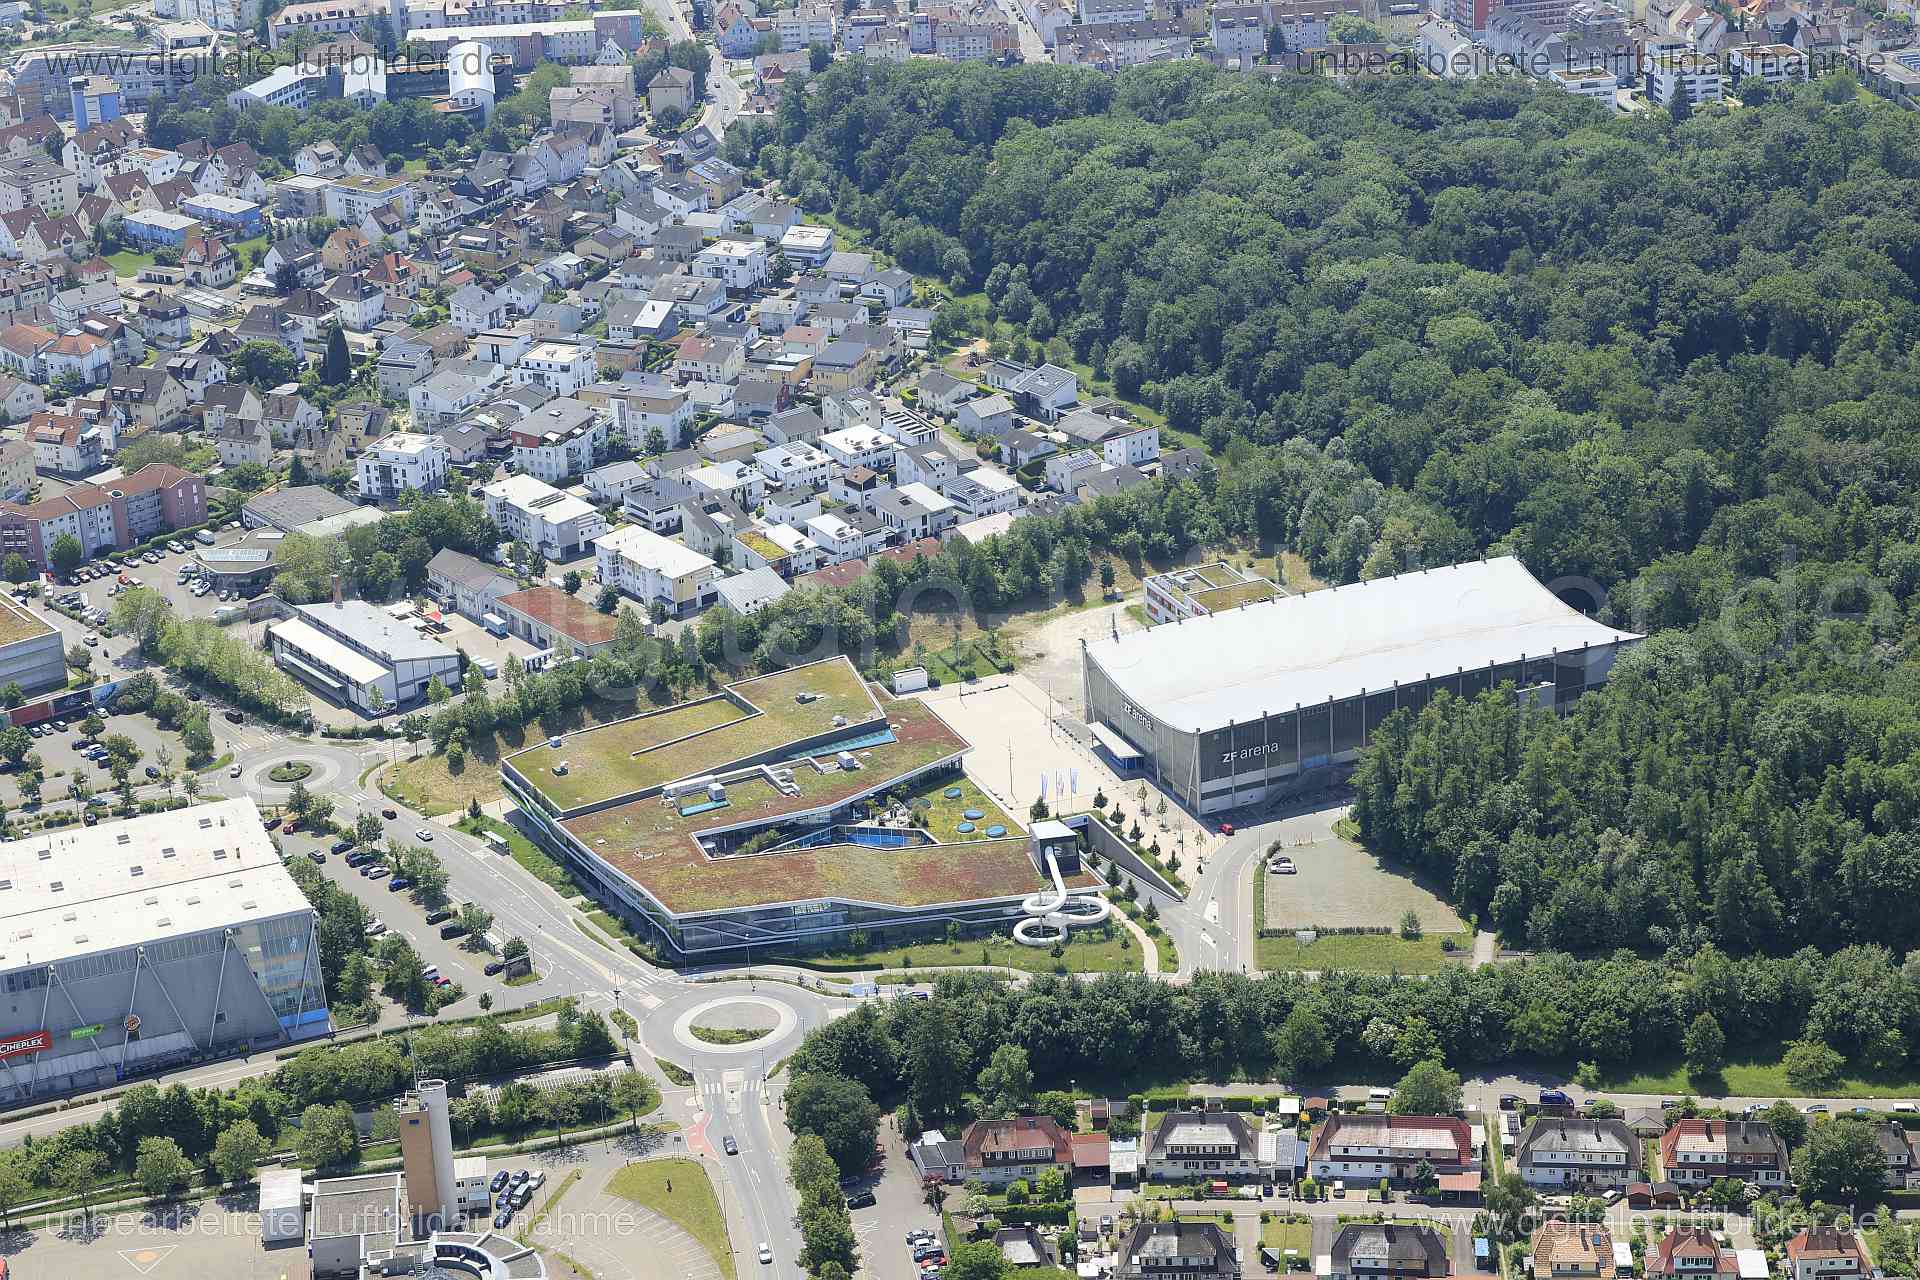 Luftbild - ZF Arena, Ort: Friedrichshafen, Tags: ZF Arena, Stadion, Sportbad, Sportpark, Kreisverkehr, ...